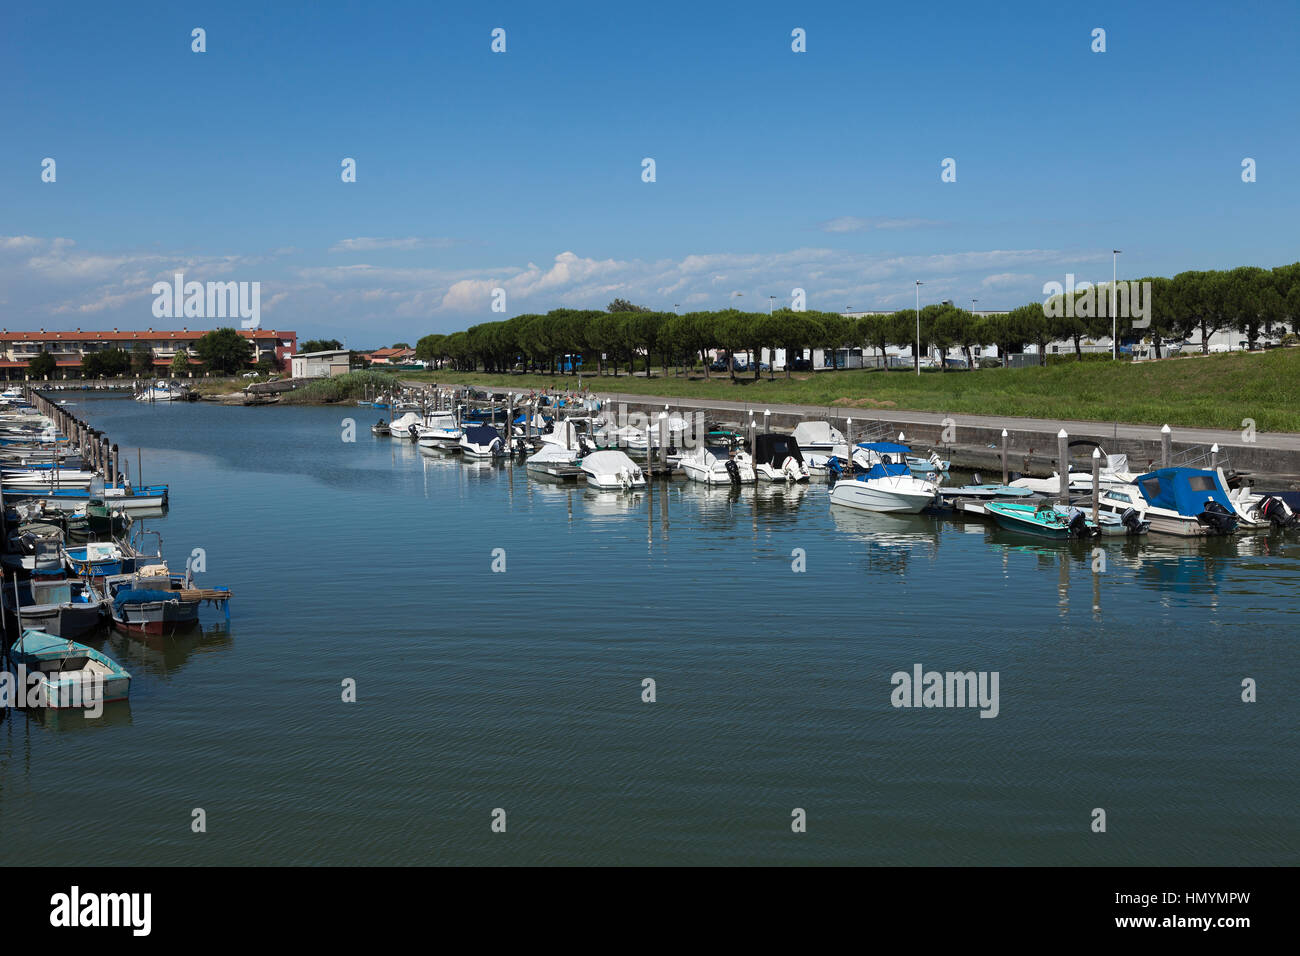 Boats in the marina of Marano lagunare Stock Photo